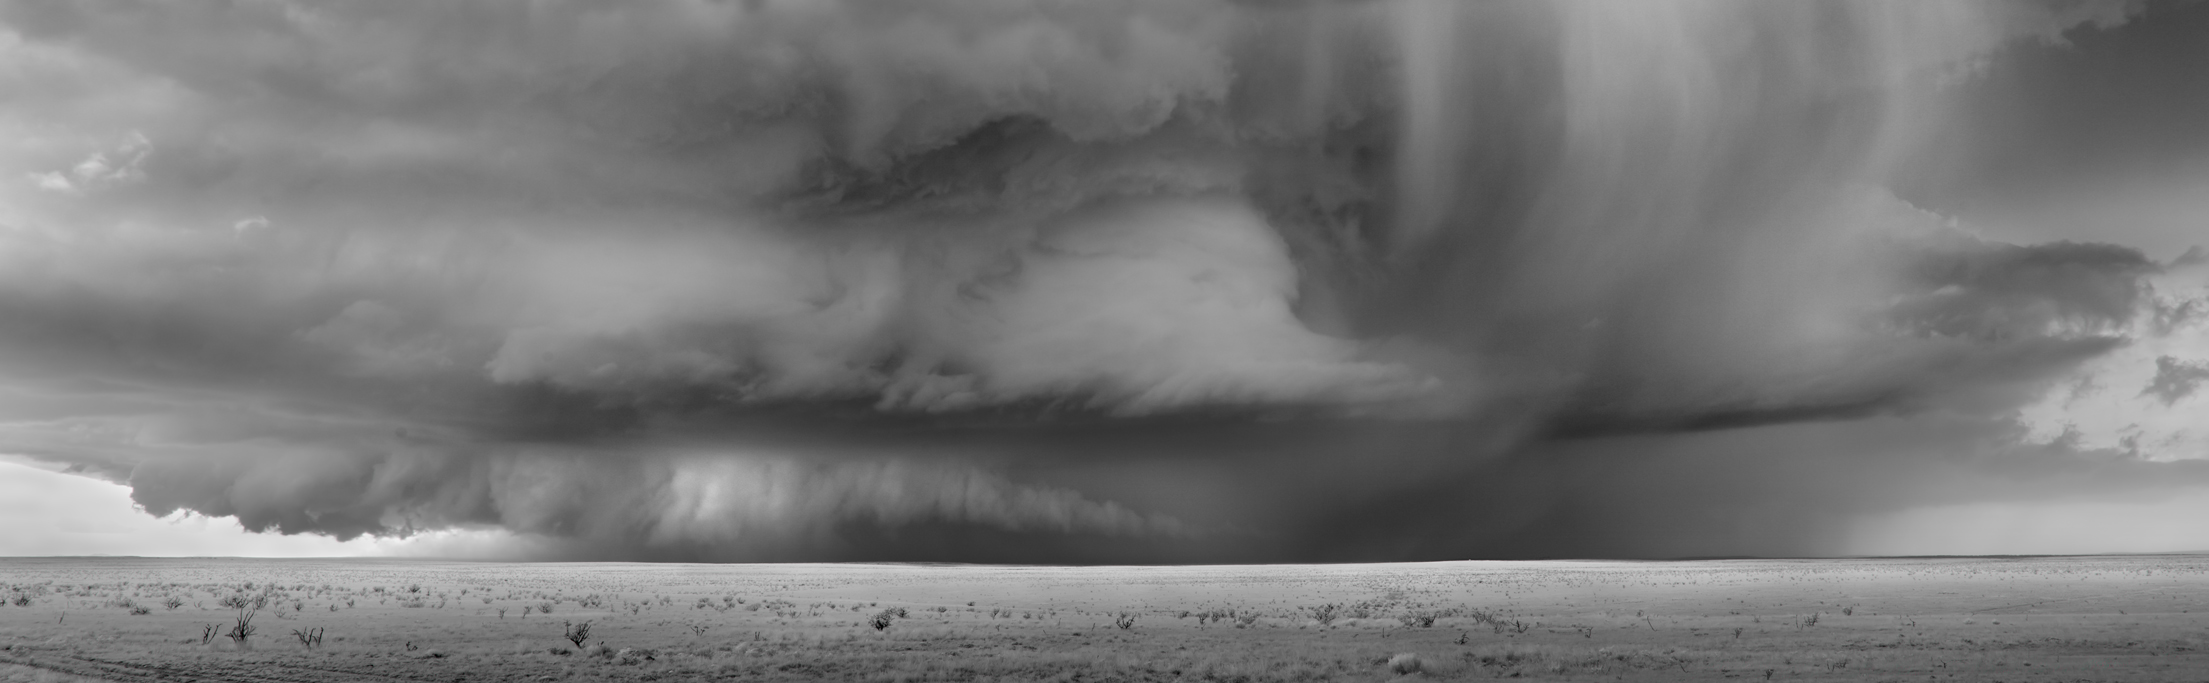 Mitch Dobrowner Hailstorm Near Corona New Mexico 2014